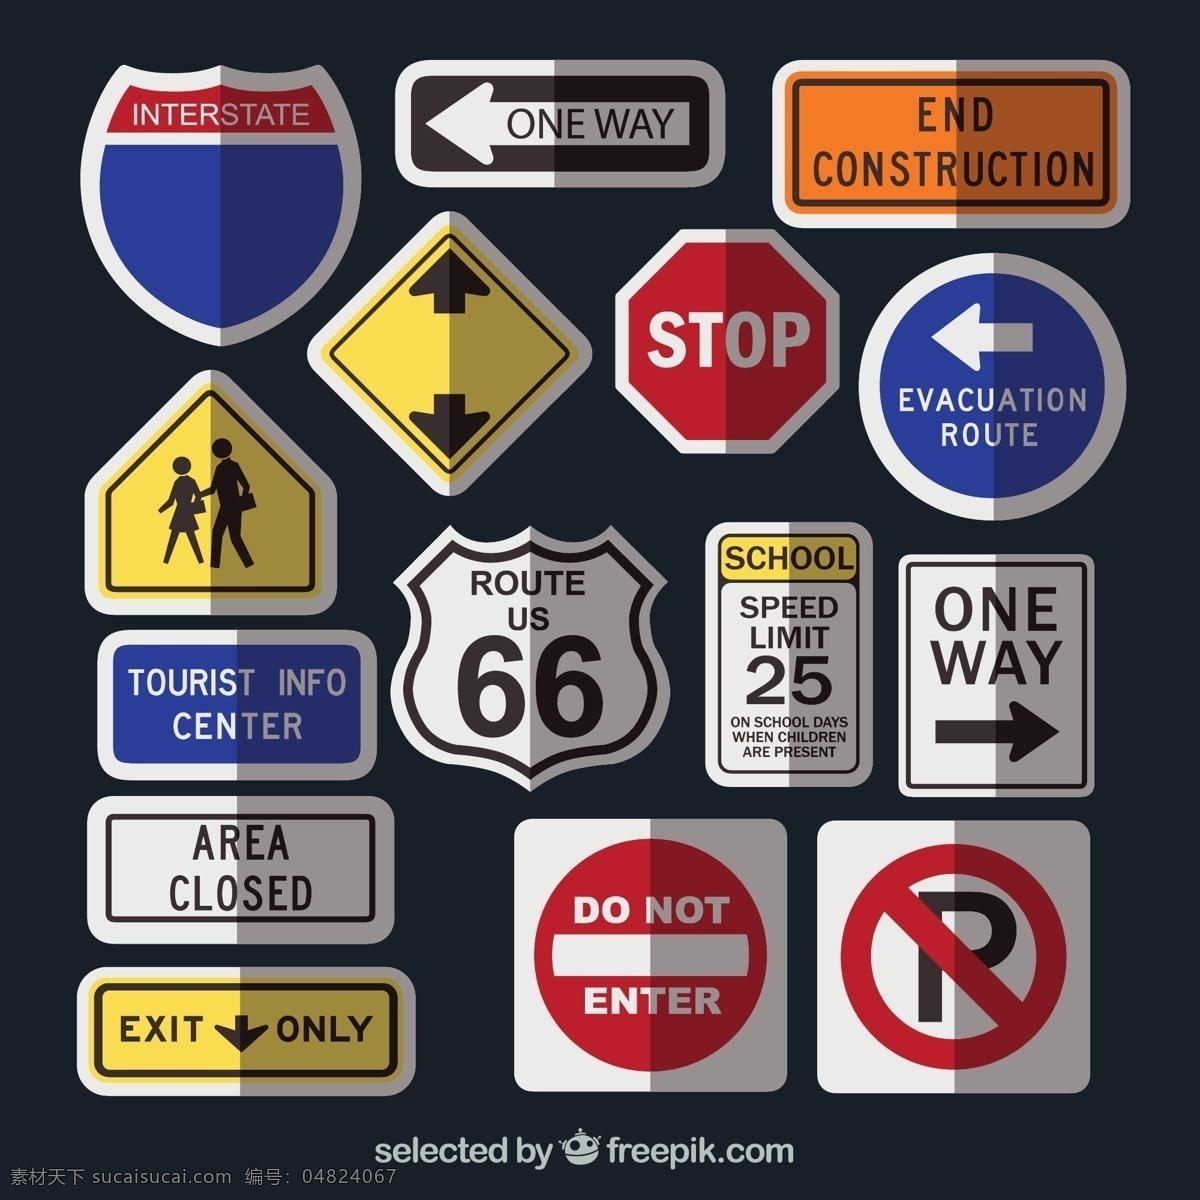 美国道路交通 标志牌素材 行人警示牌 停止 停车牌 出口 限速牌 交通标志 66号公路 指示牌 eps格式 图标 标签 标志图标 其他图标